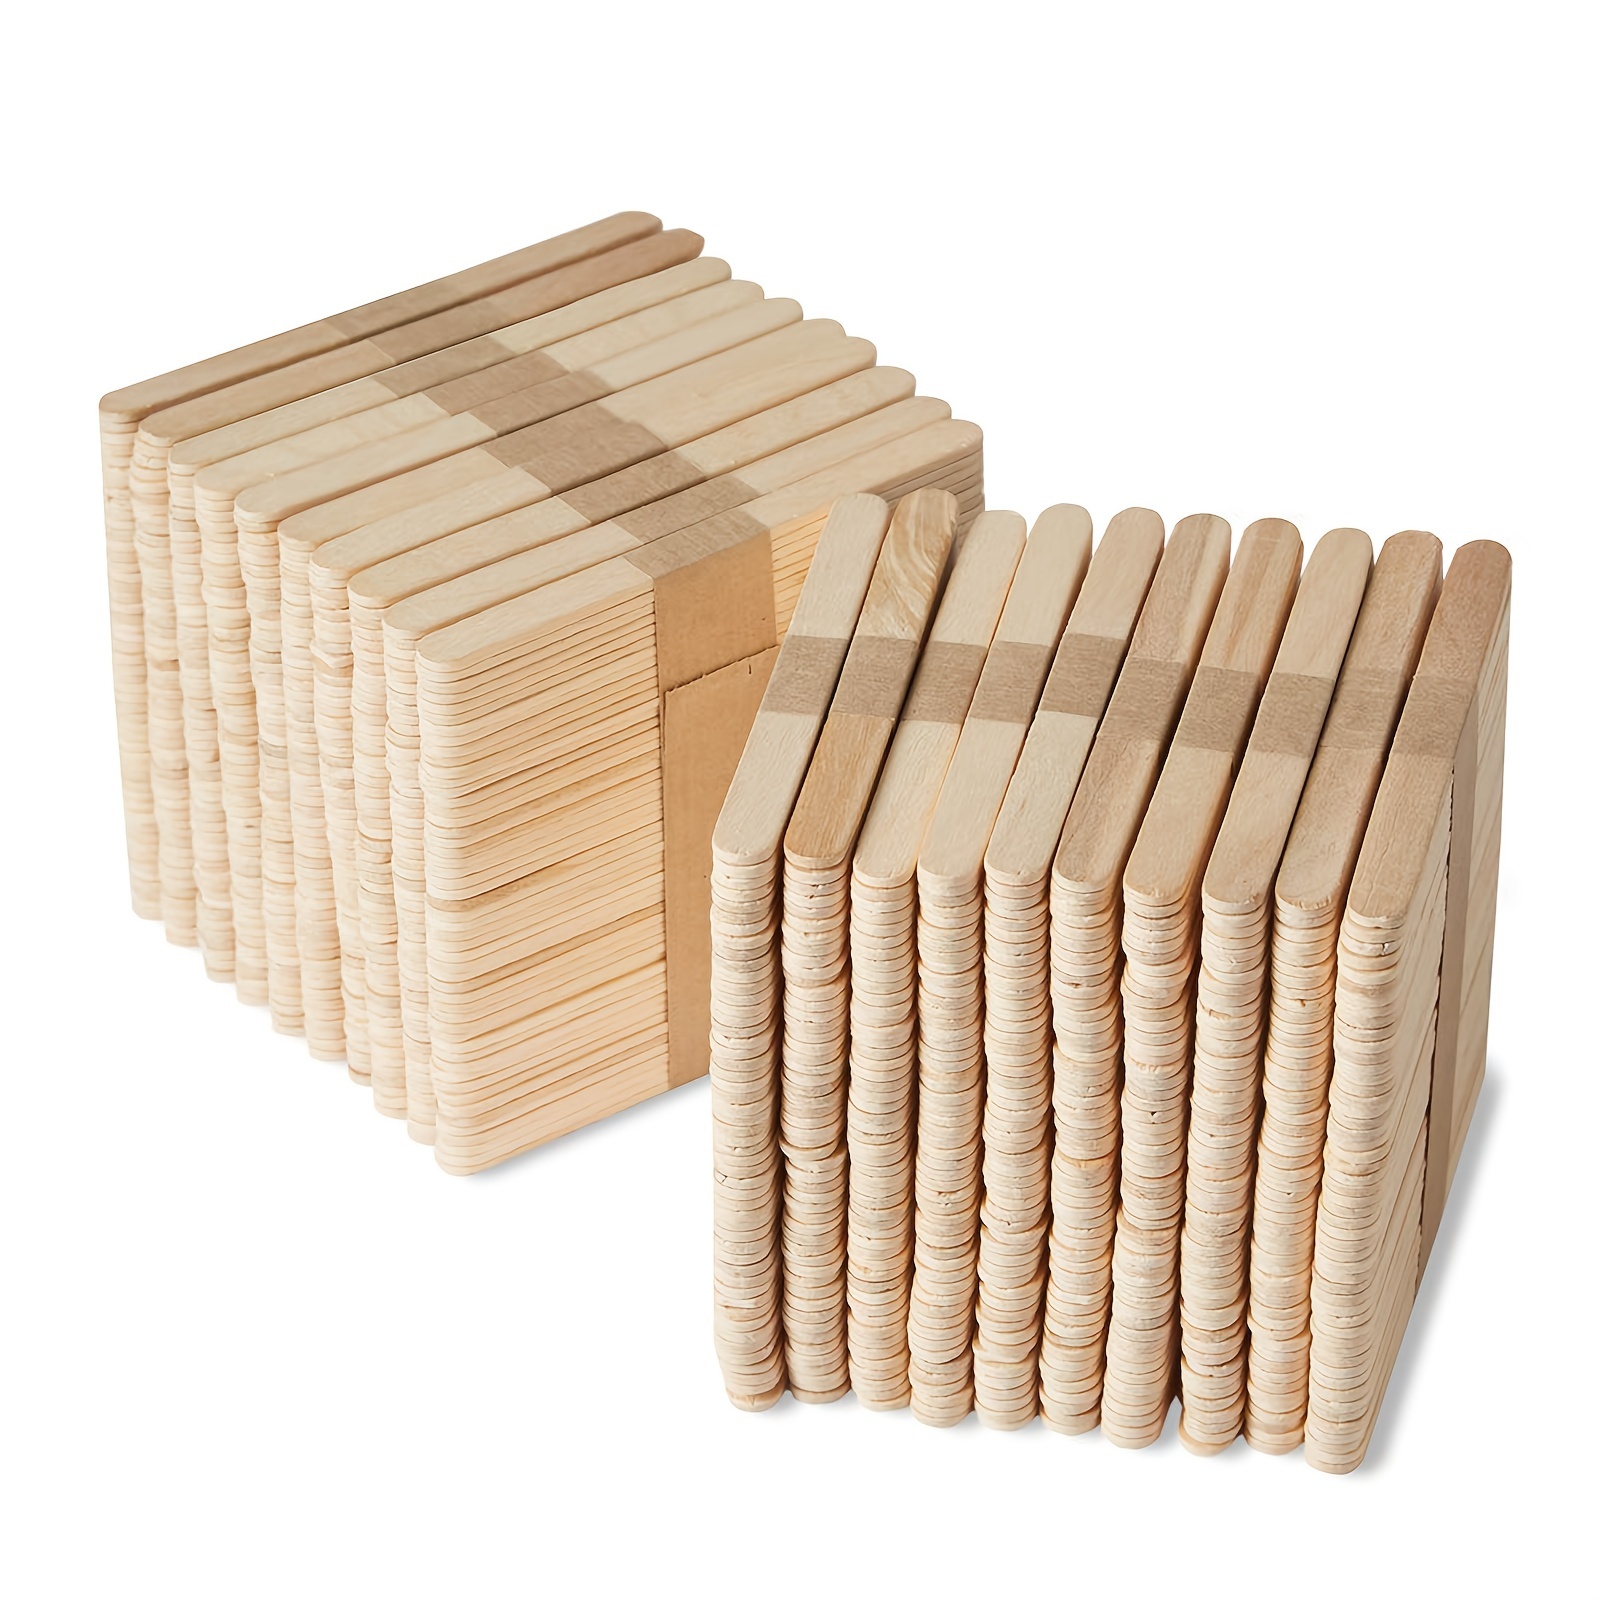 Donde comprar palitos redondeados de madera para manualidades en Chile